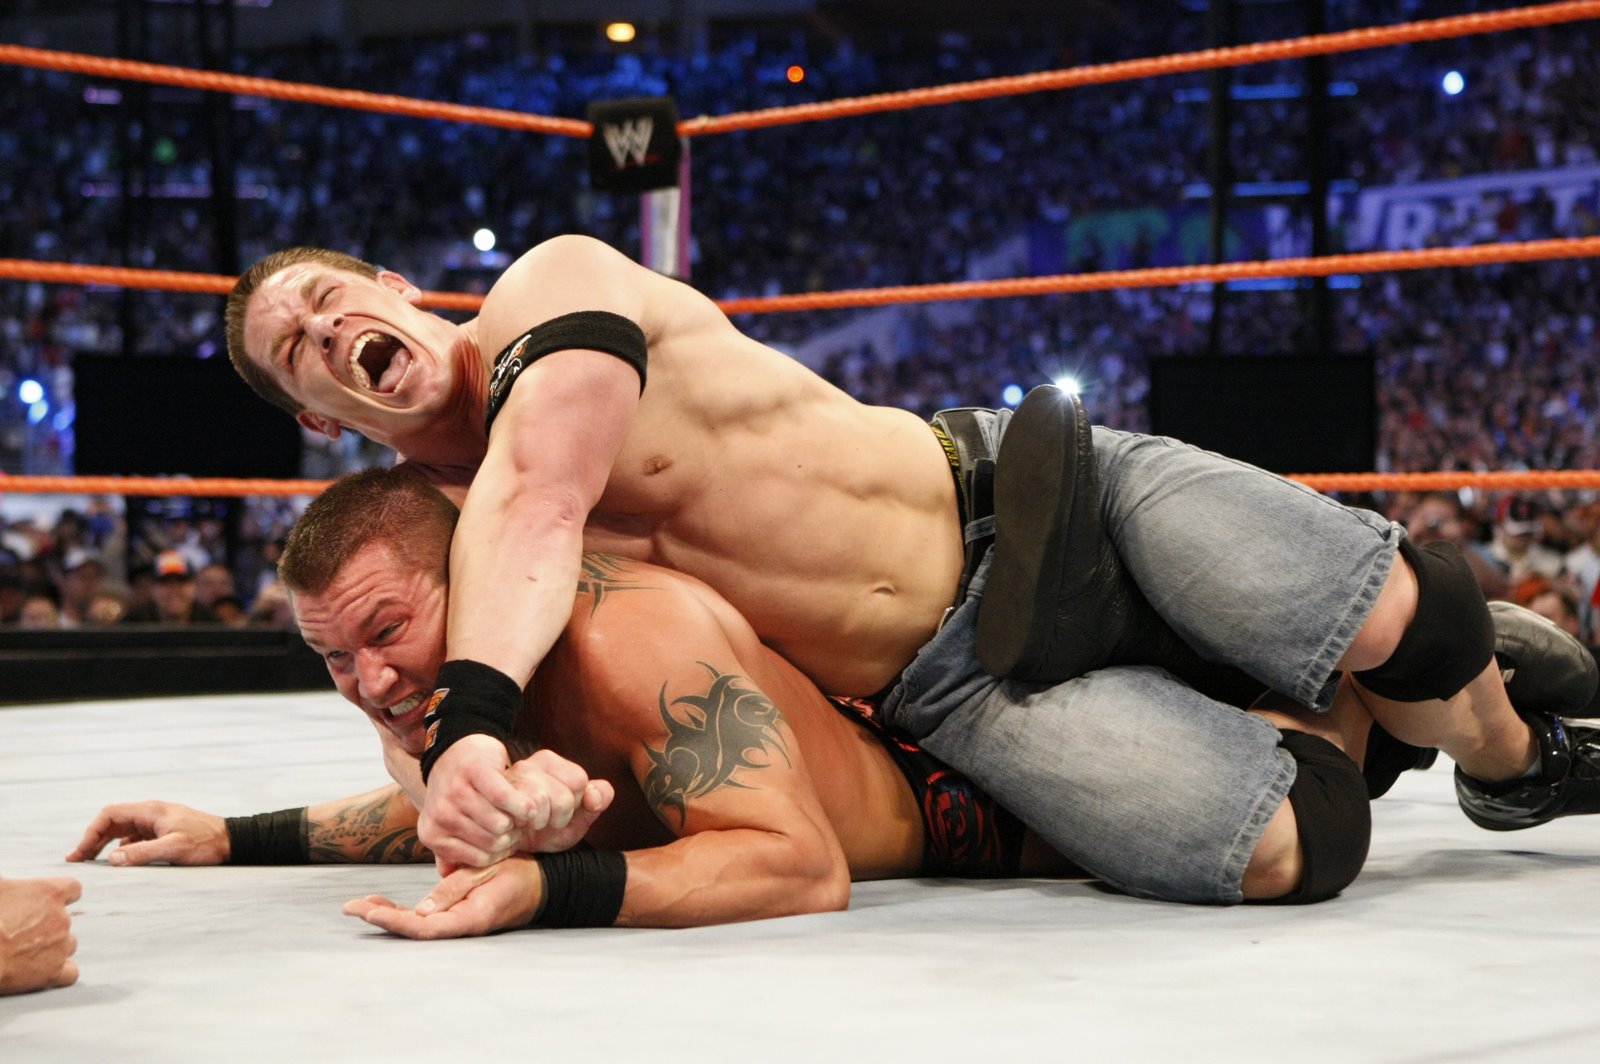 [John+Cena+vs+Randy+Orton.bmp]